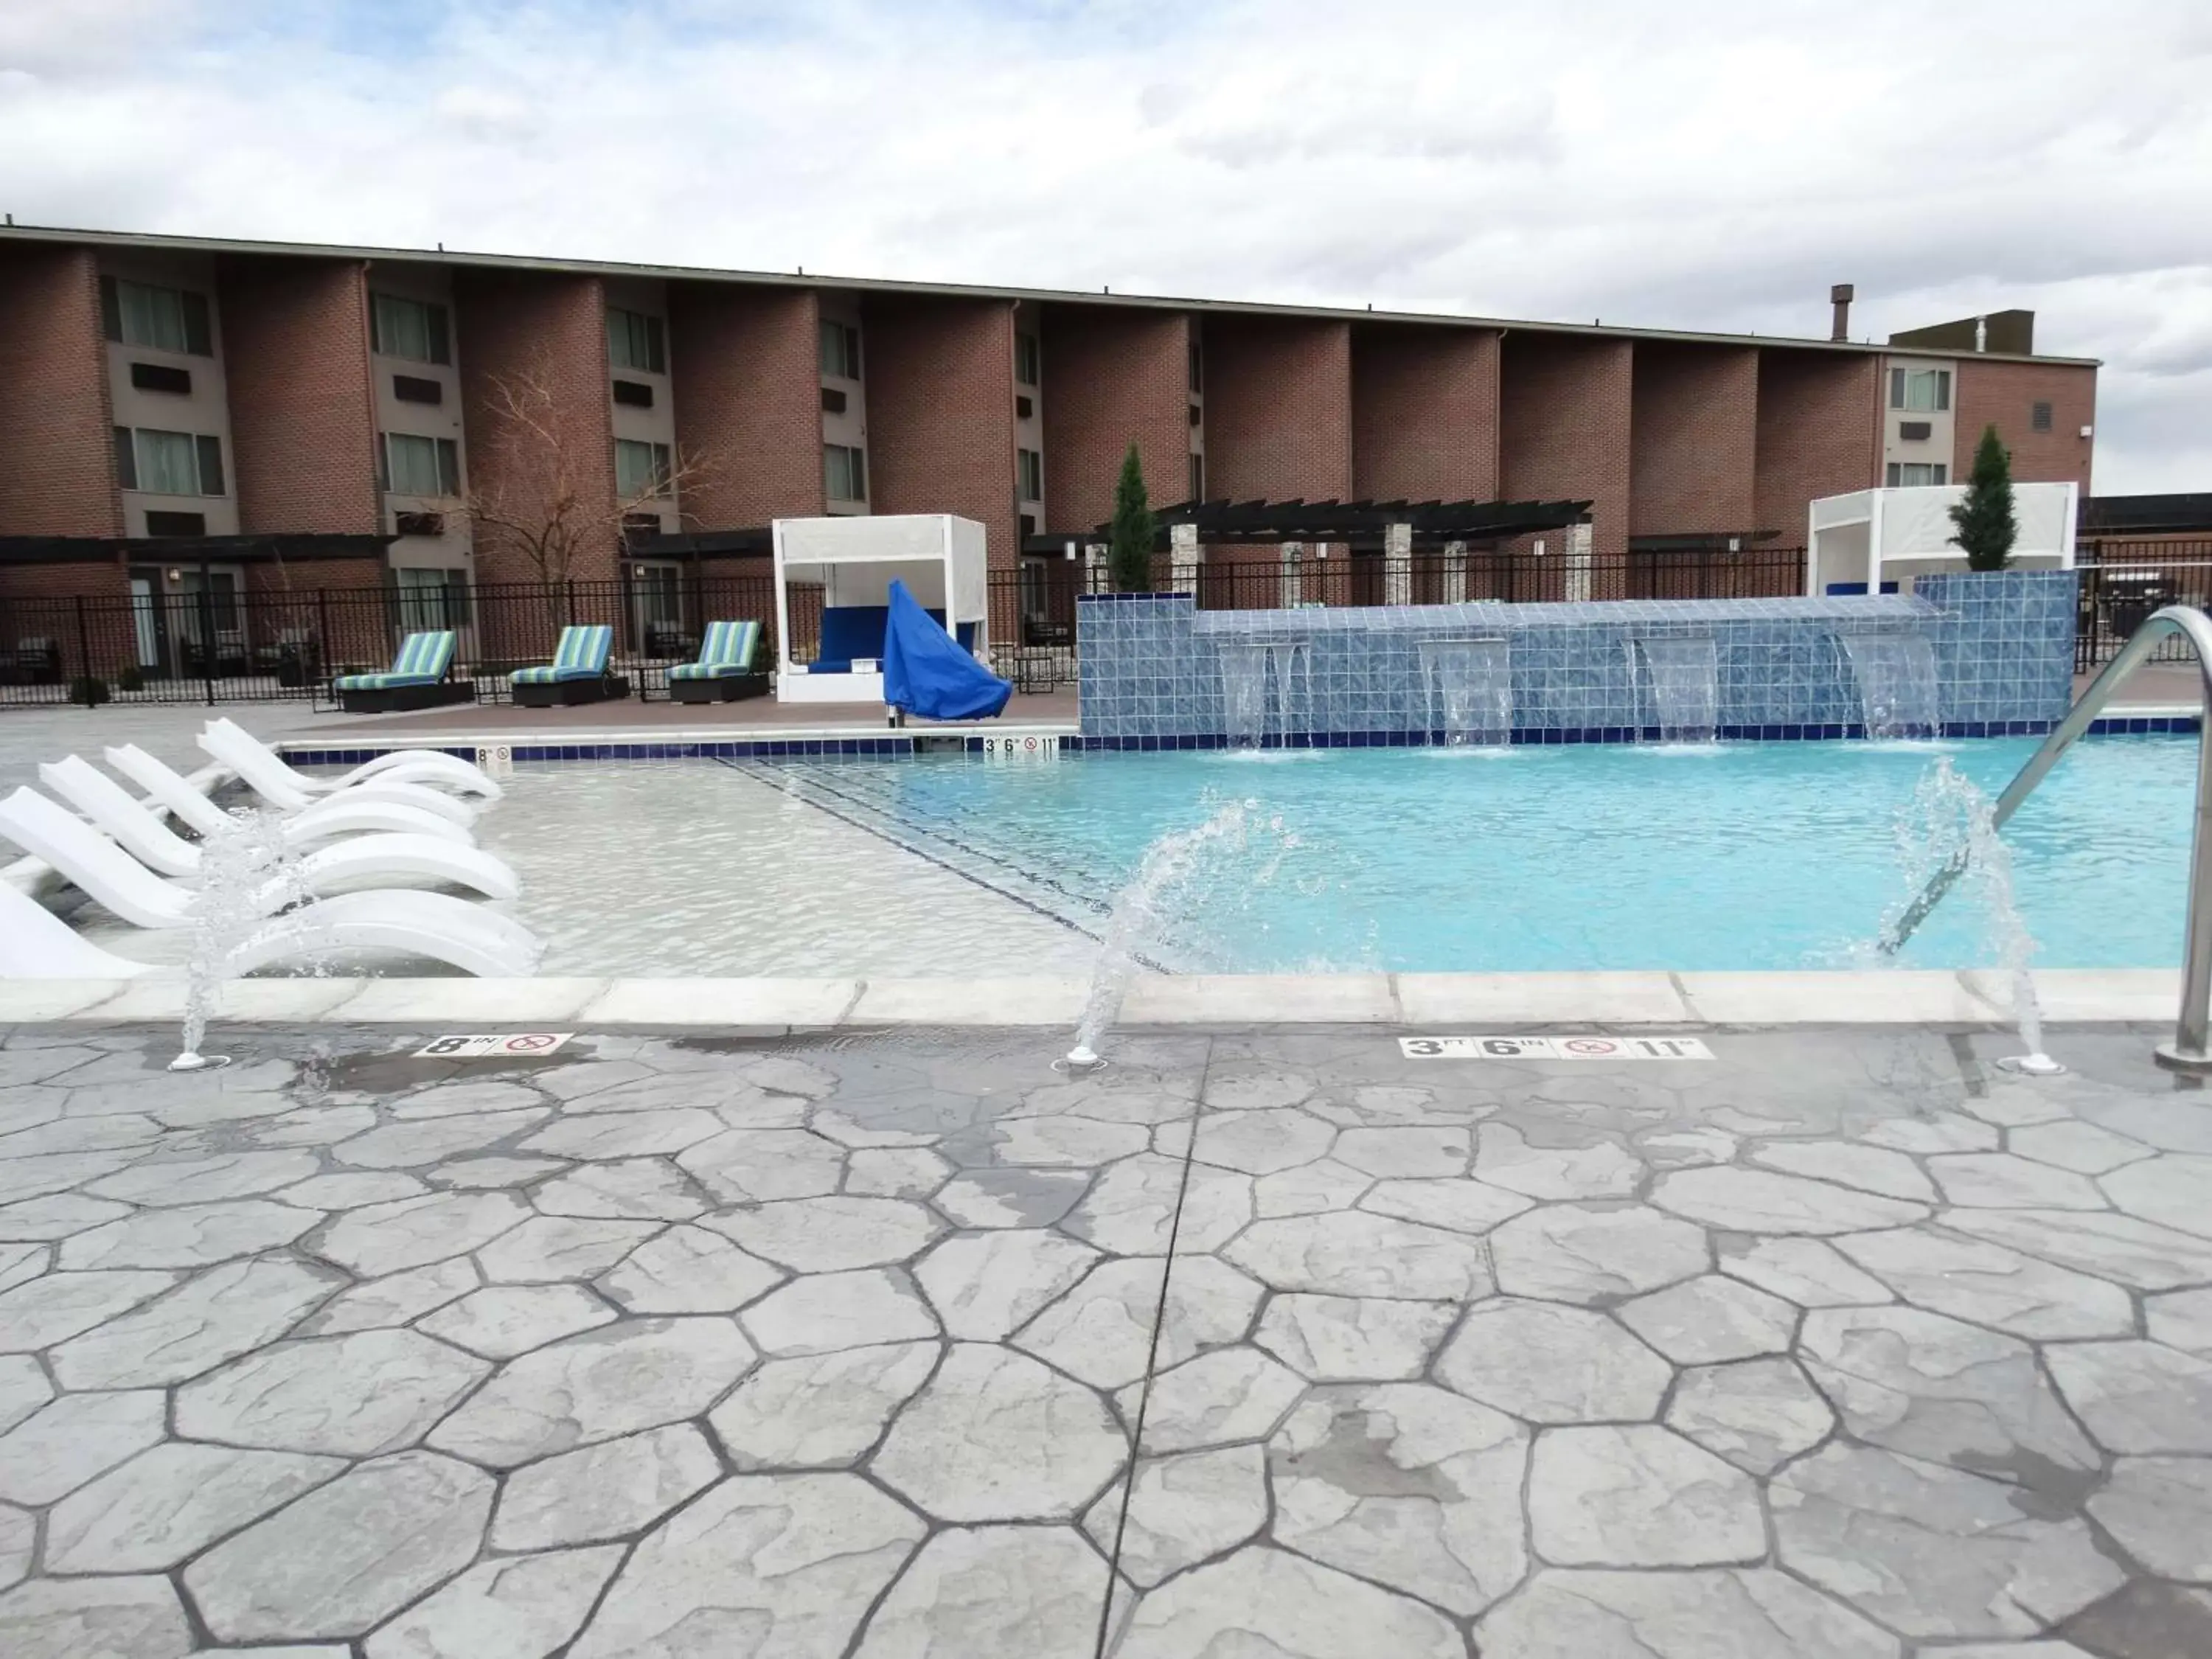 On site, Swimming Pool in Best Western Premier Denver East